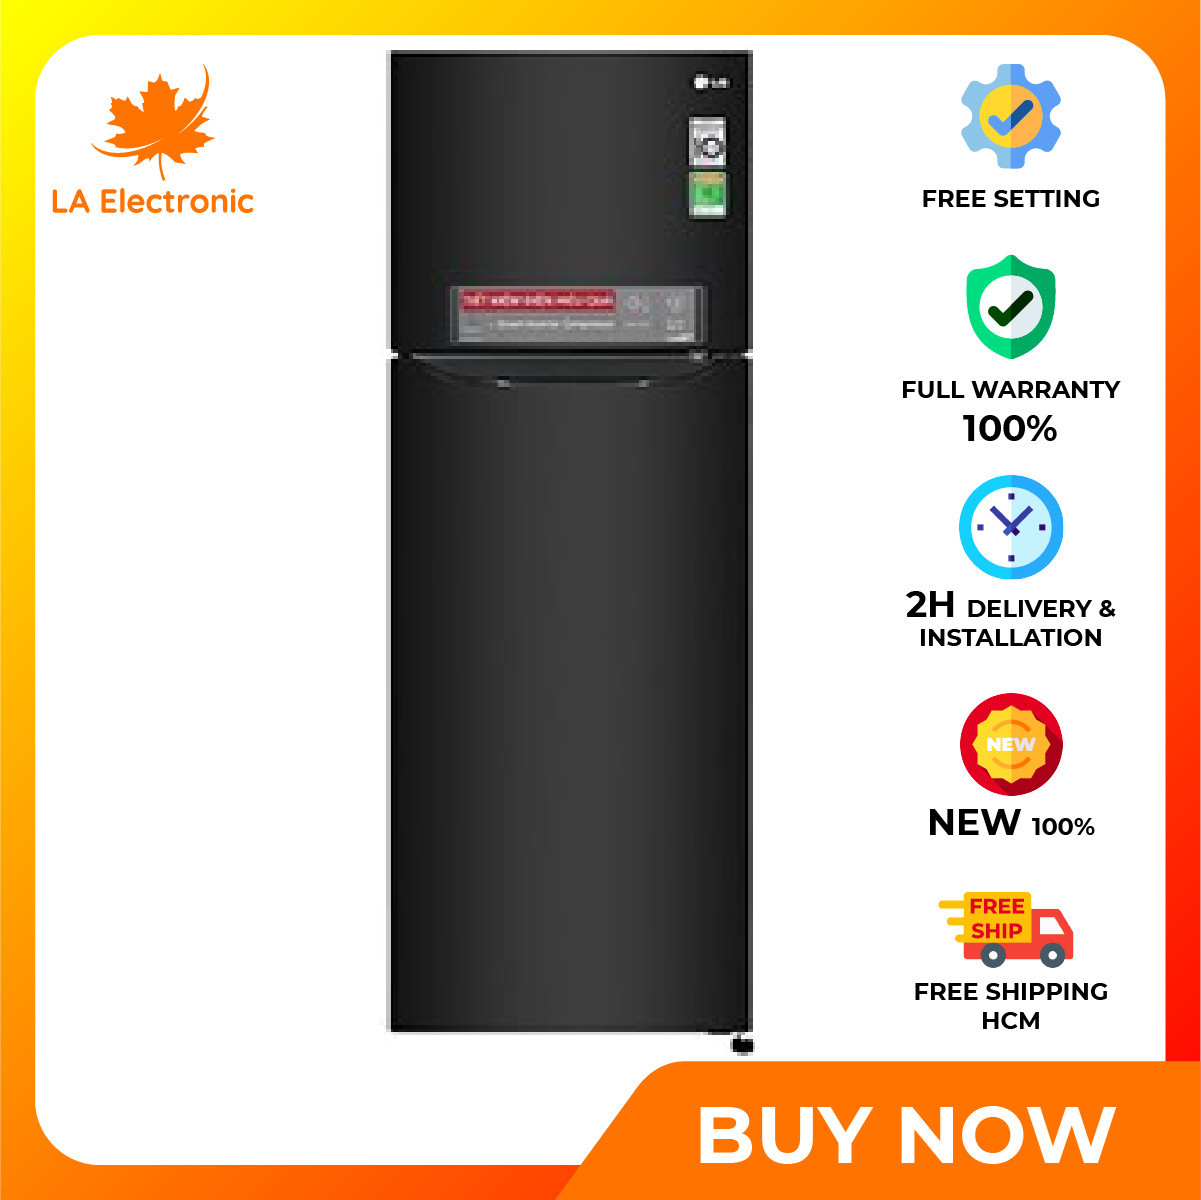 Trả Góp 0% – Tủ Lạnh LG Inverter 255 lít GN-M255BL – Miễn phí vận chuyển HCM